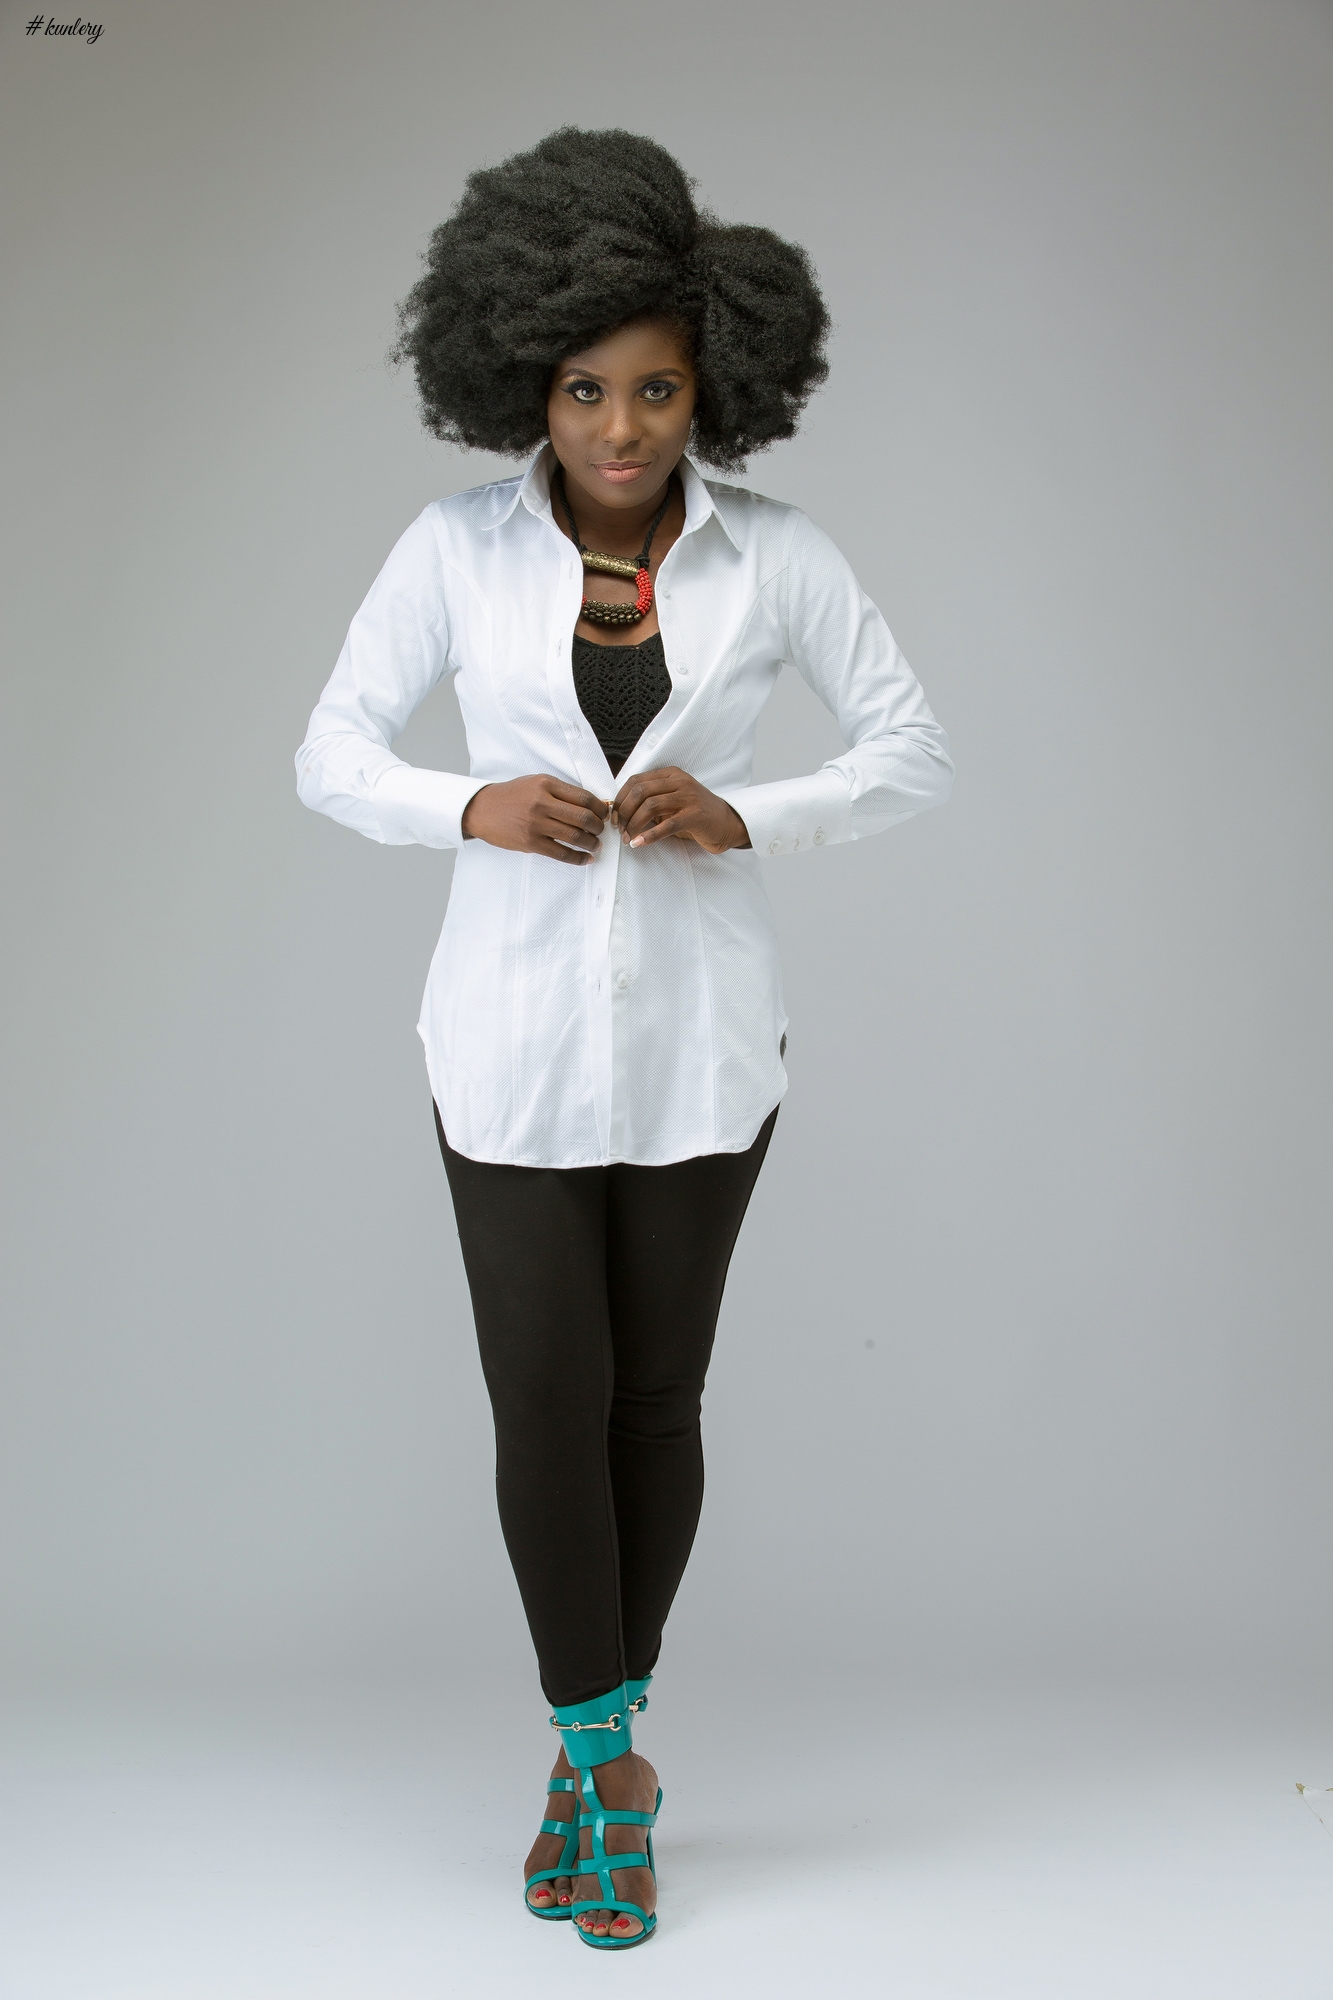 Pick & Choose, Mix & Match! 6 Ways to Wear a White Shirt by Jane Michael Ekanem